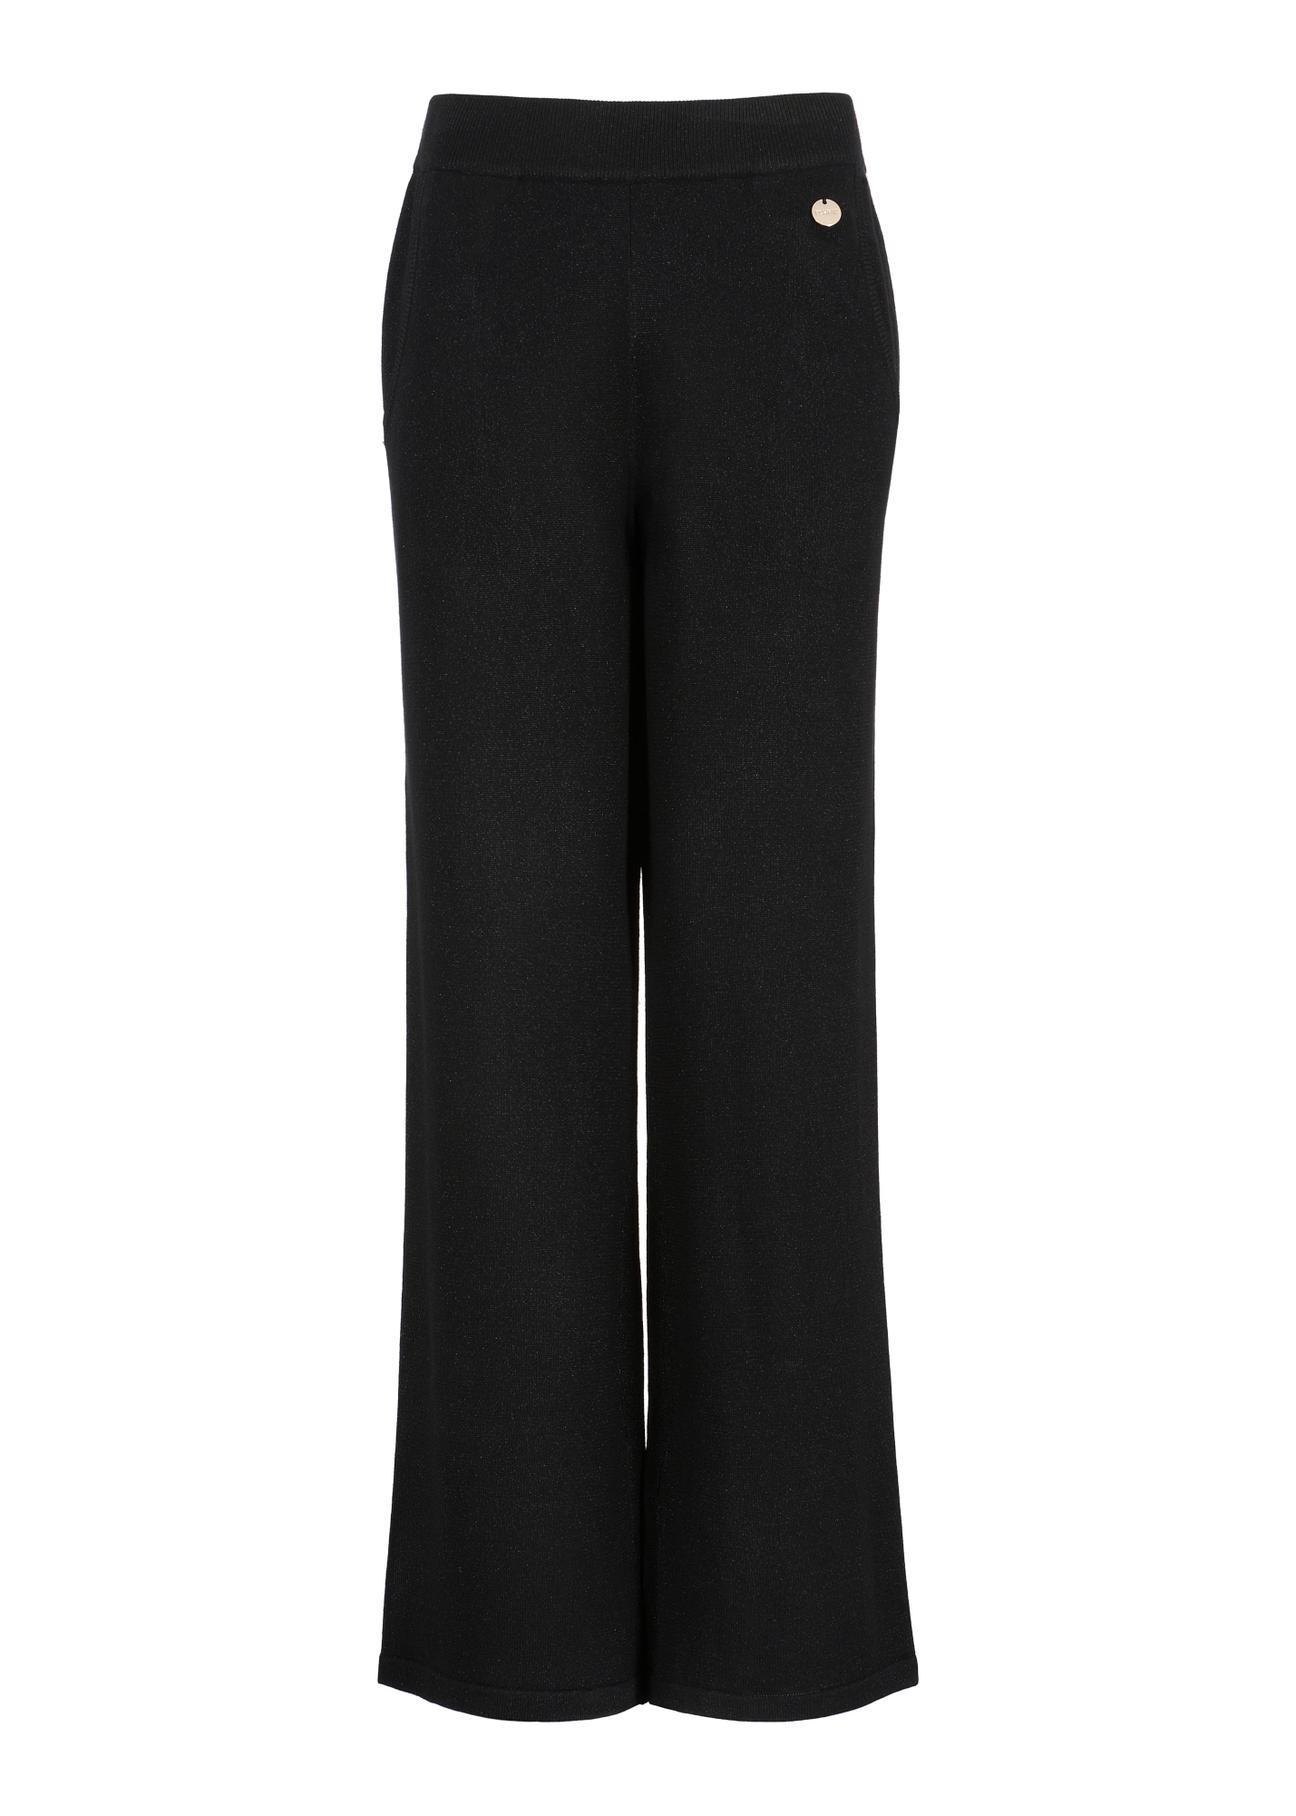 Czarne błyszczące spodnie damskie SPODT-0085-99(Z23)